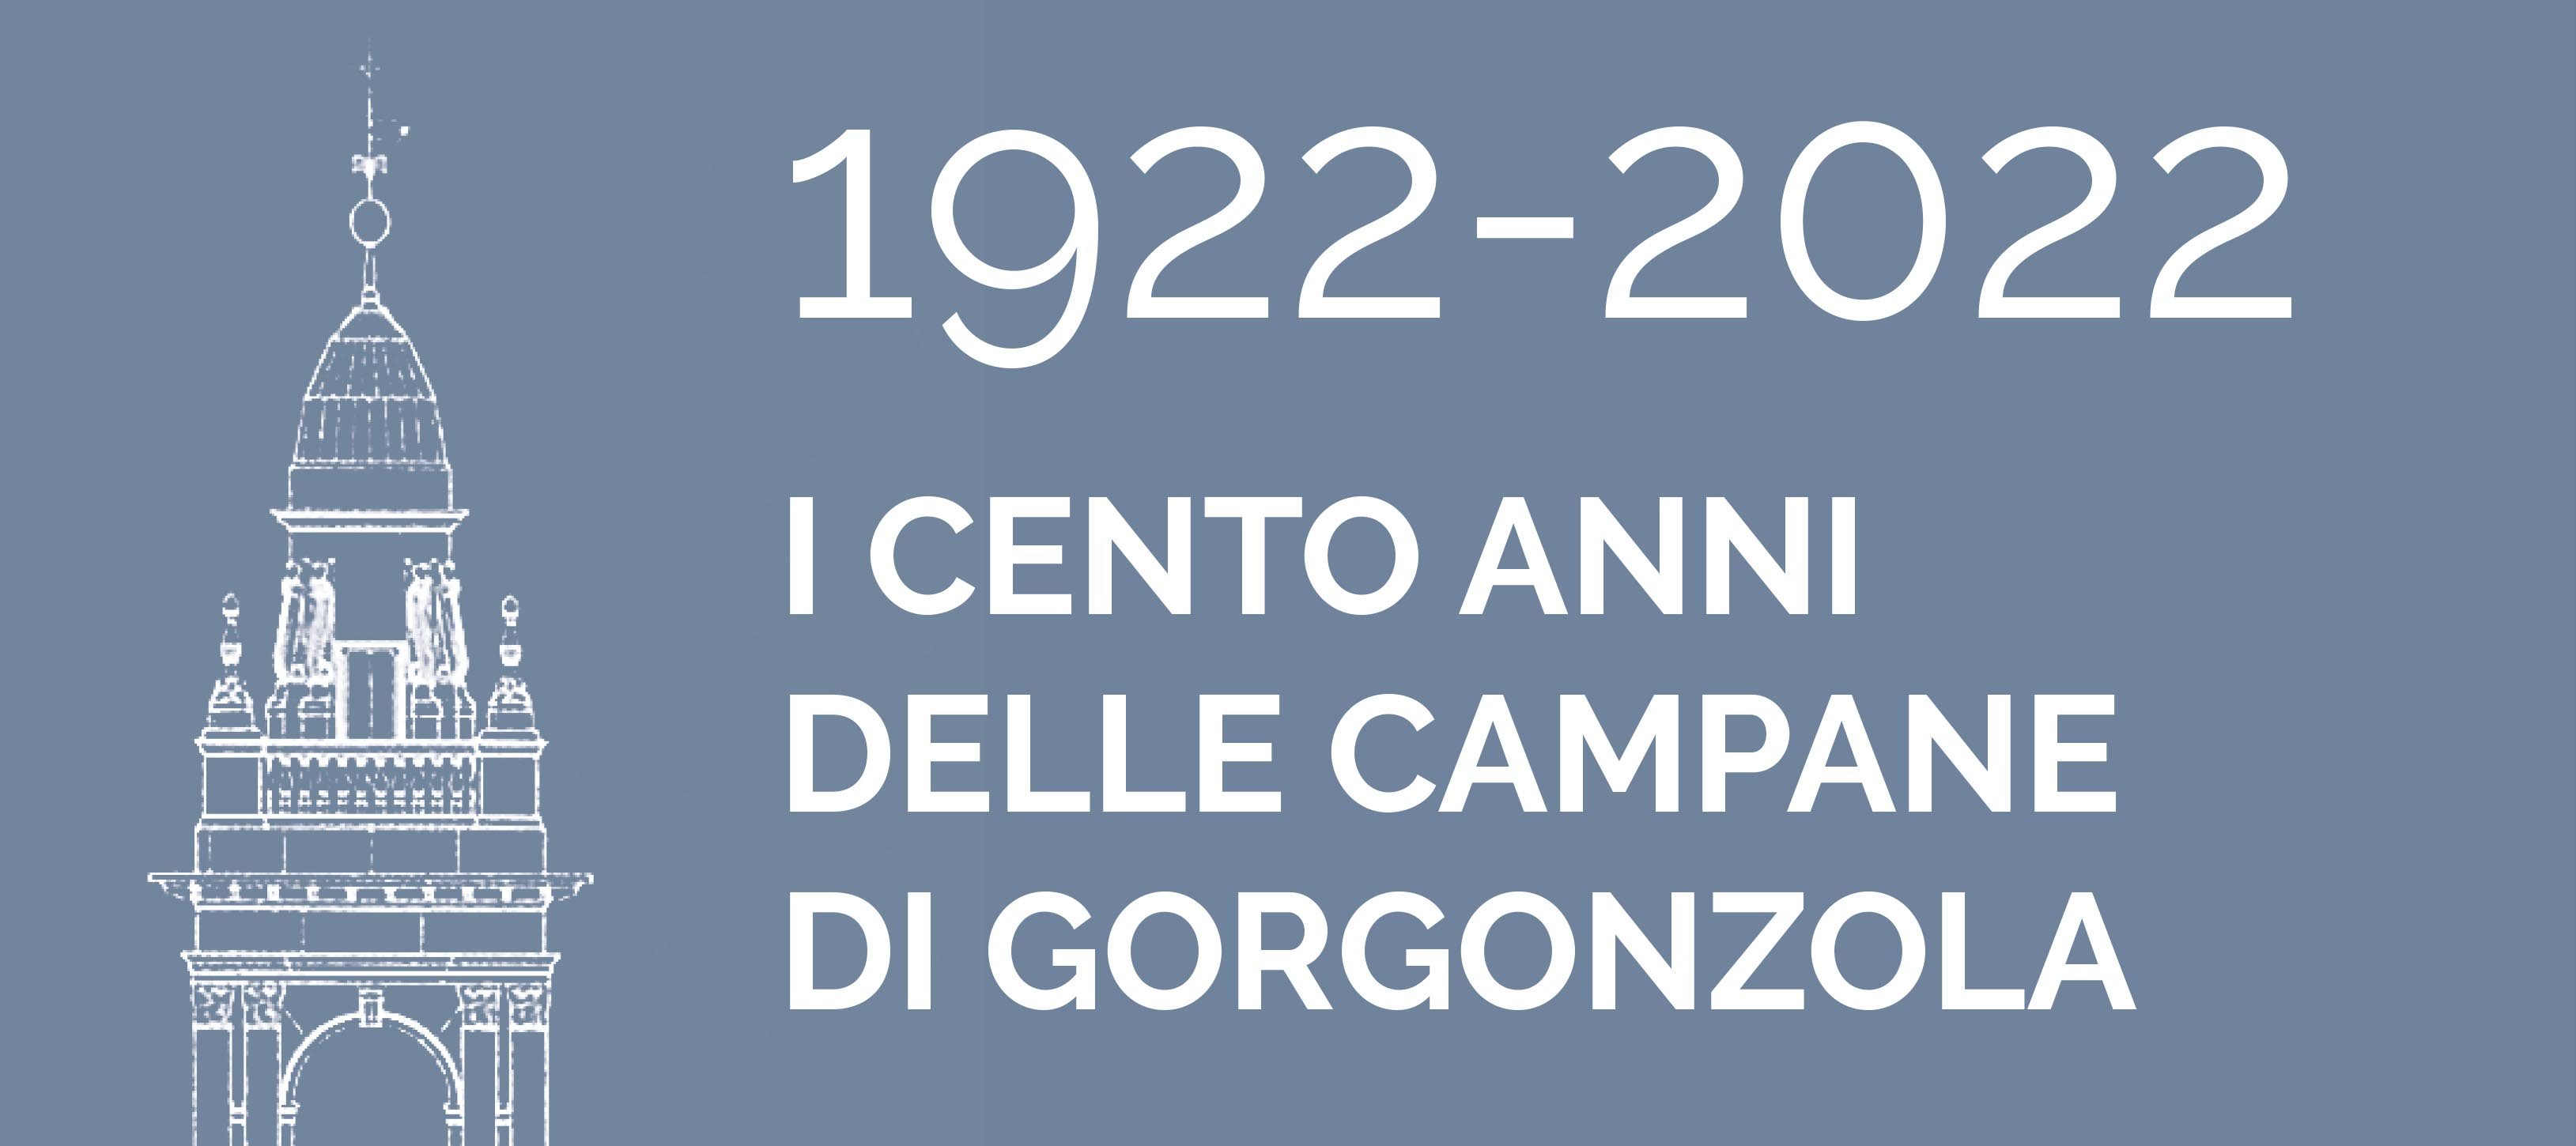 1922-2022 – I cento anni delle campane di Gorgonzola